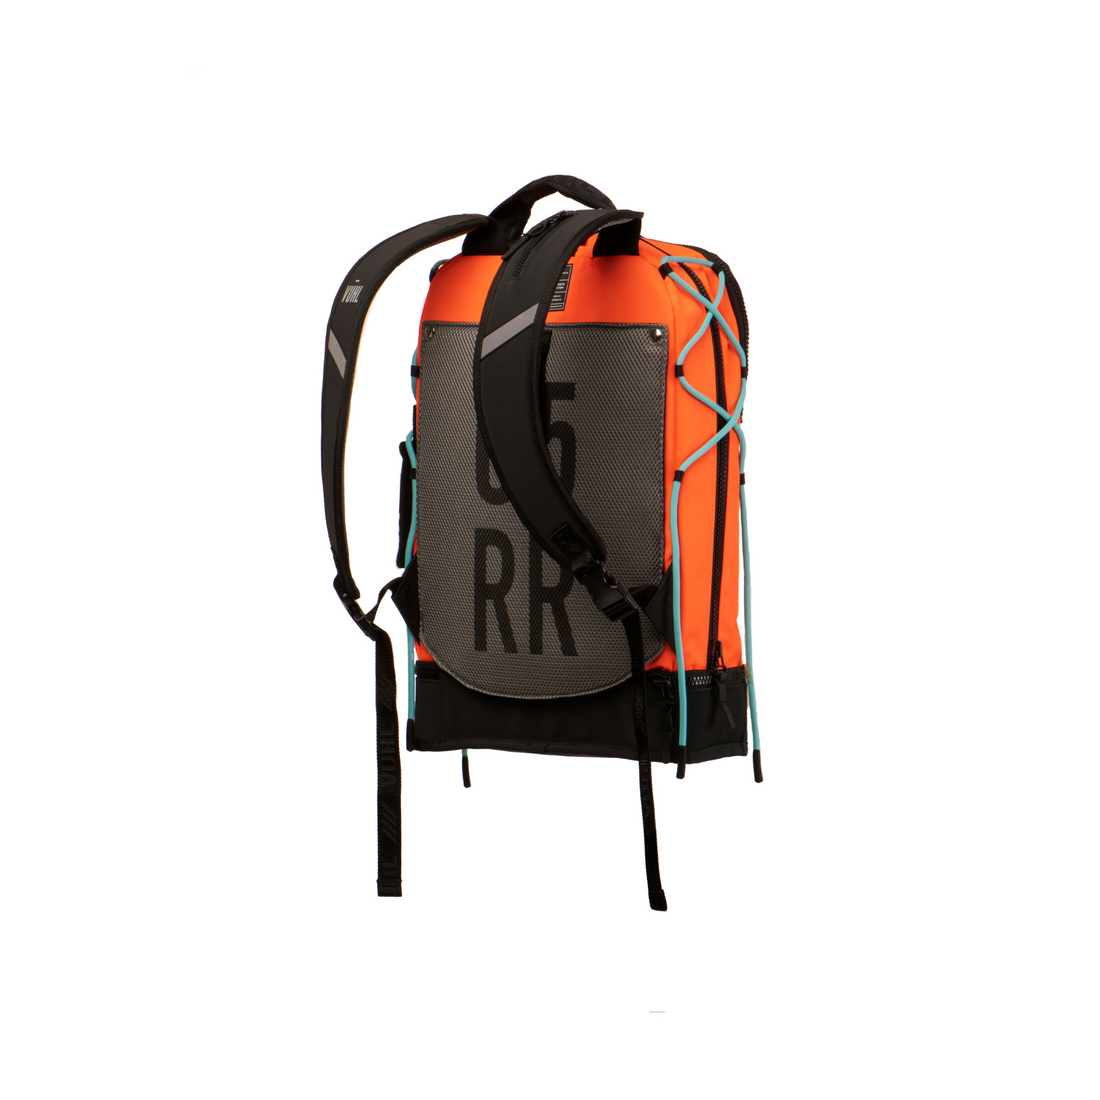 VUHL_Backpack_Orange